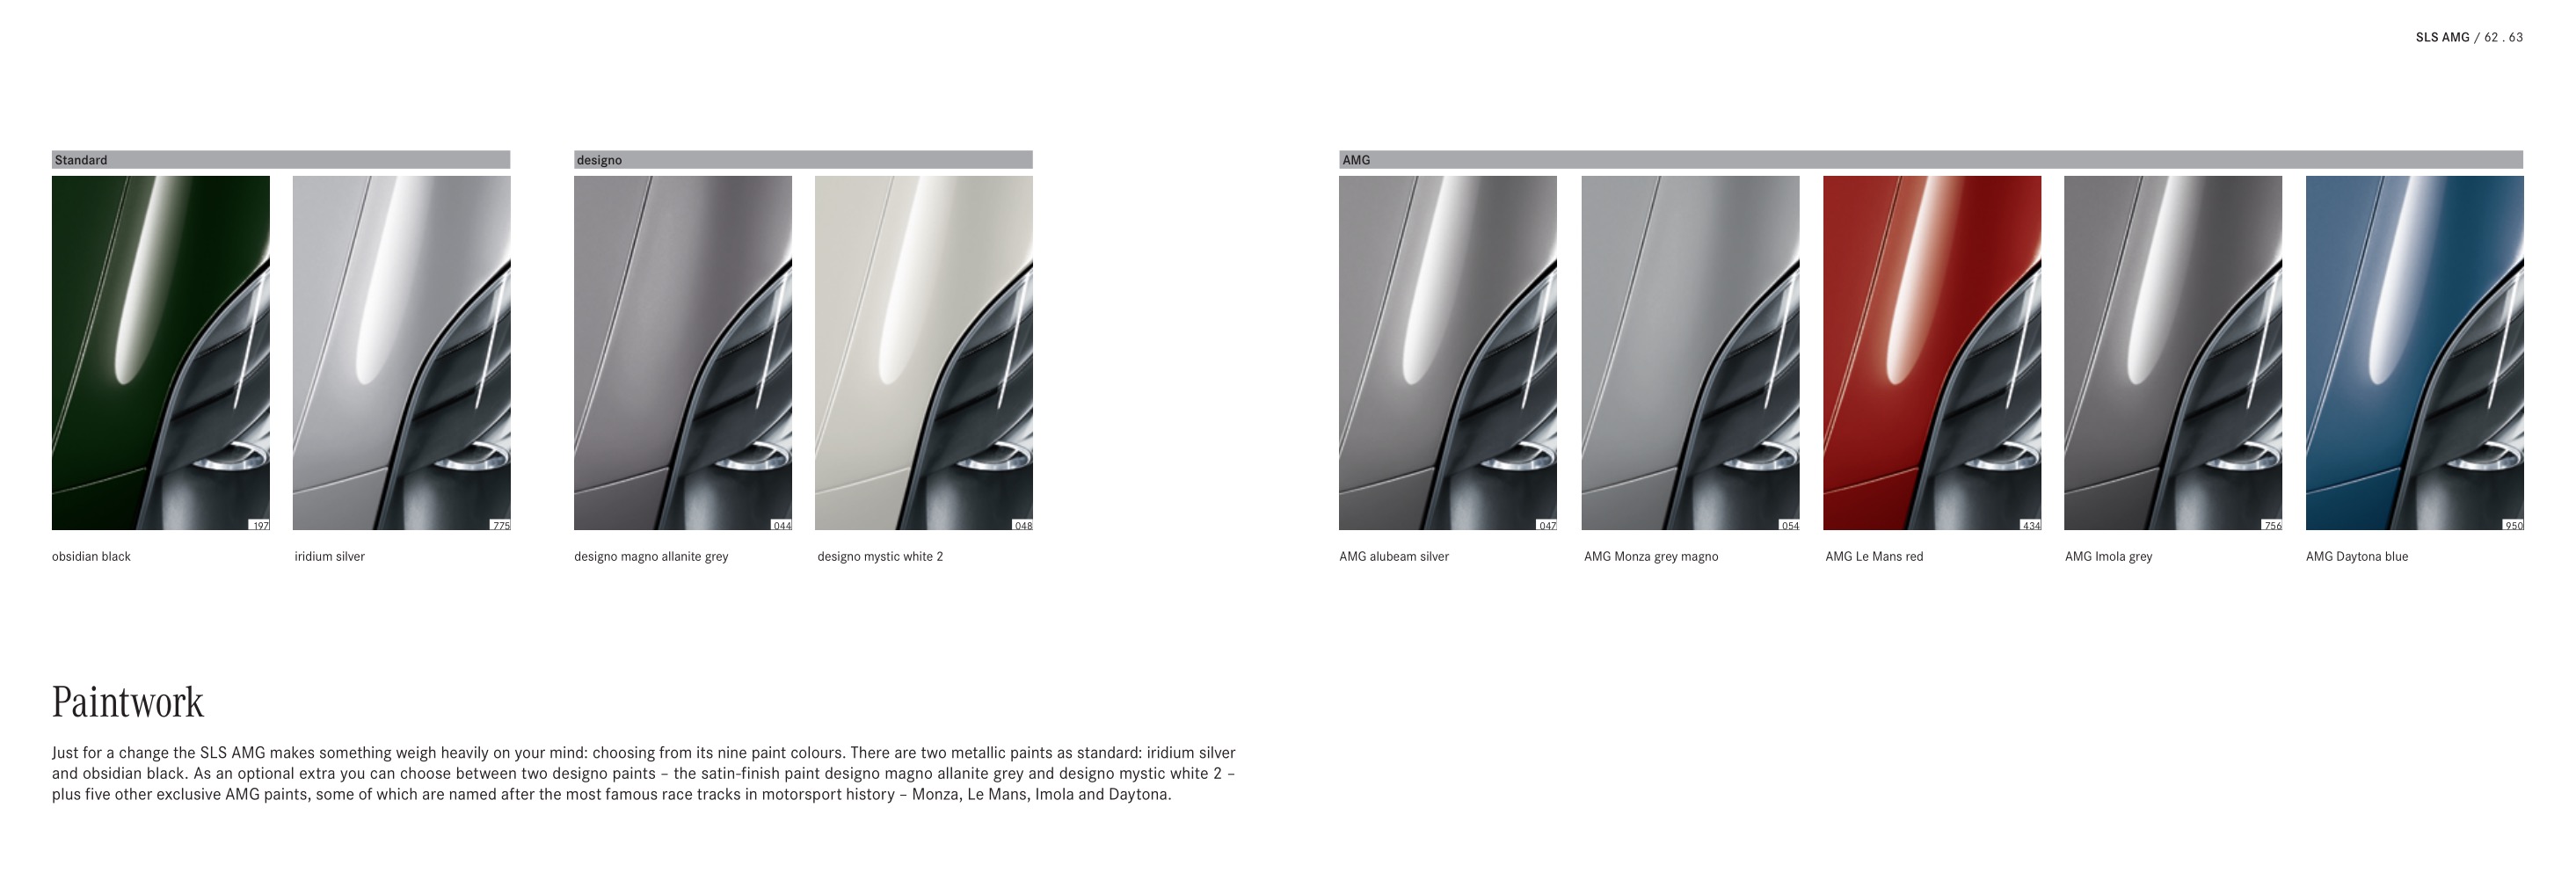 2013 Mercedes-Benz SLS Class Brochure Page 2